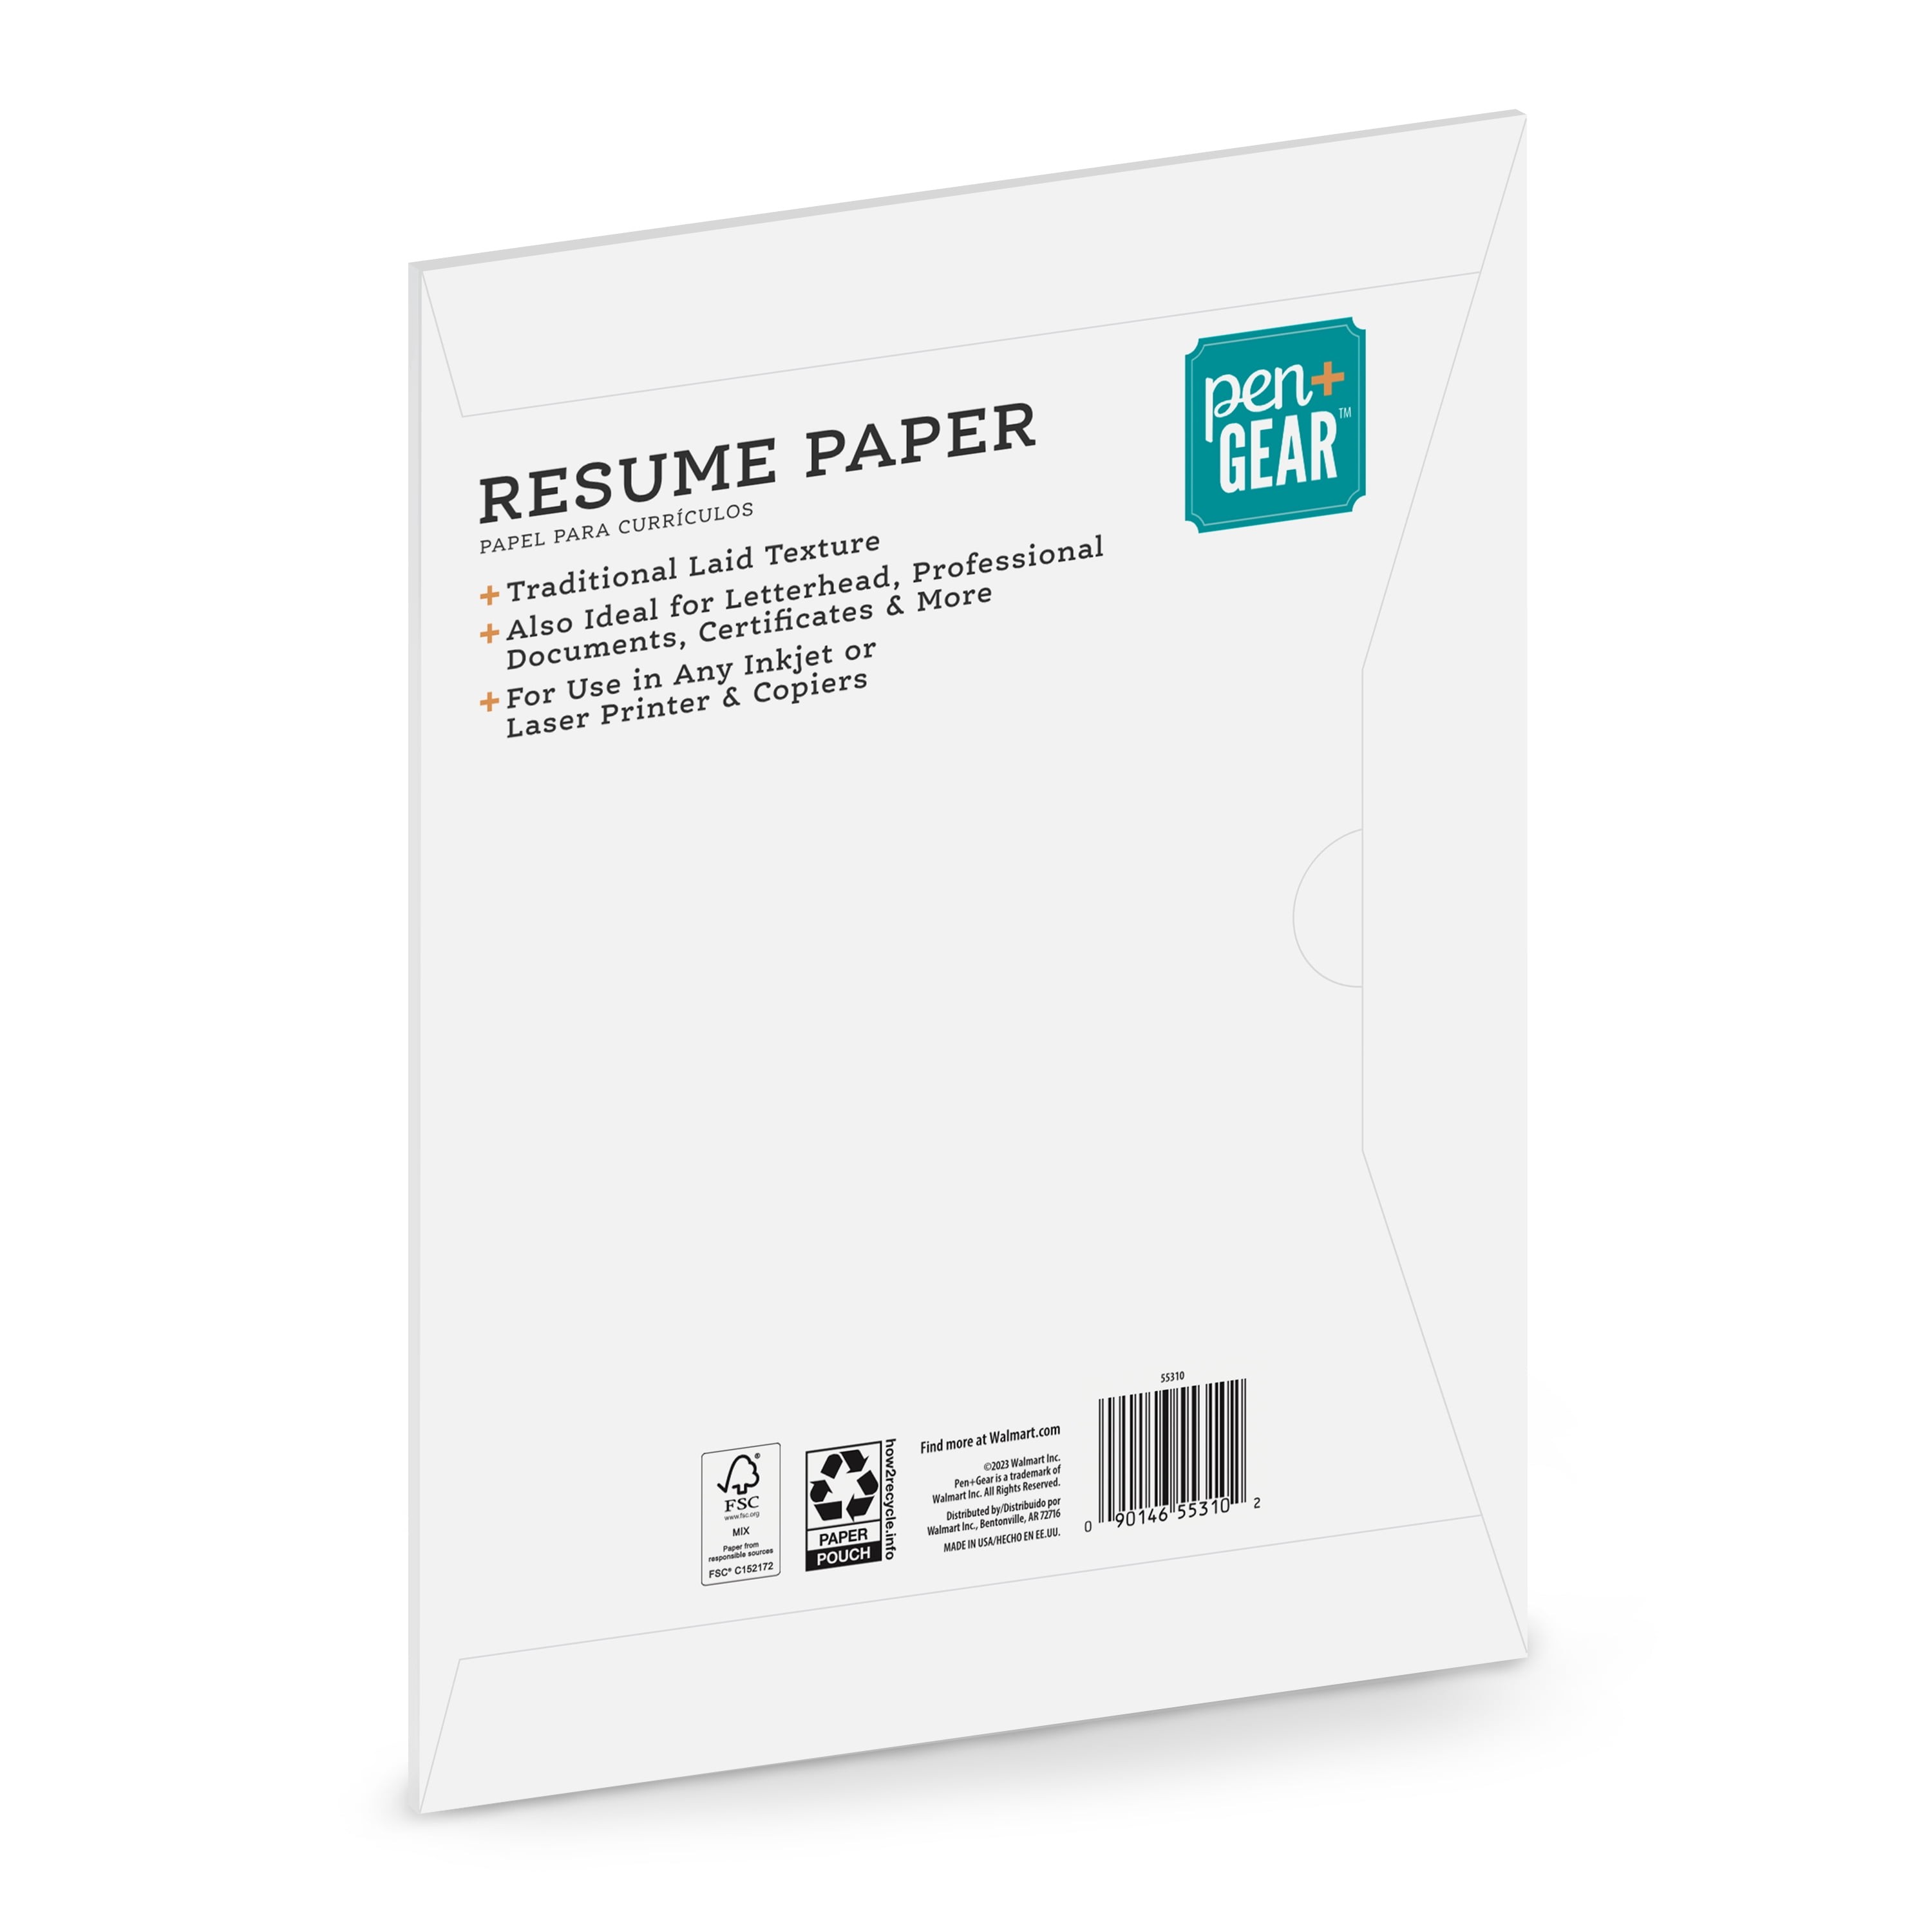 Pen + Gear Copy Paper, Assorted Neon, 8.5 x 11, 24 lb, 150 Sheets